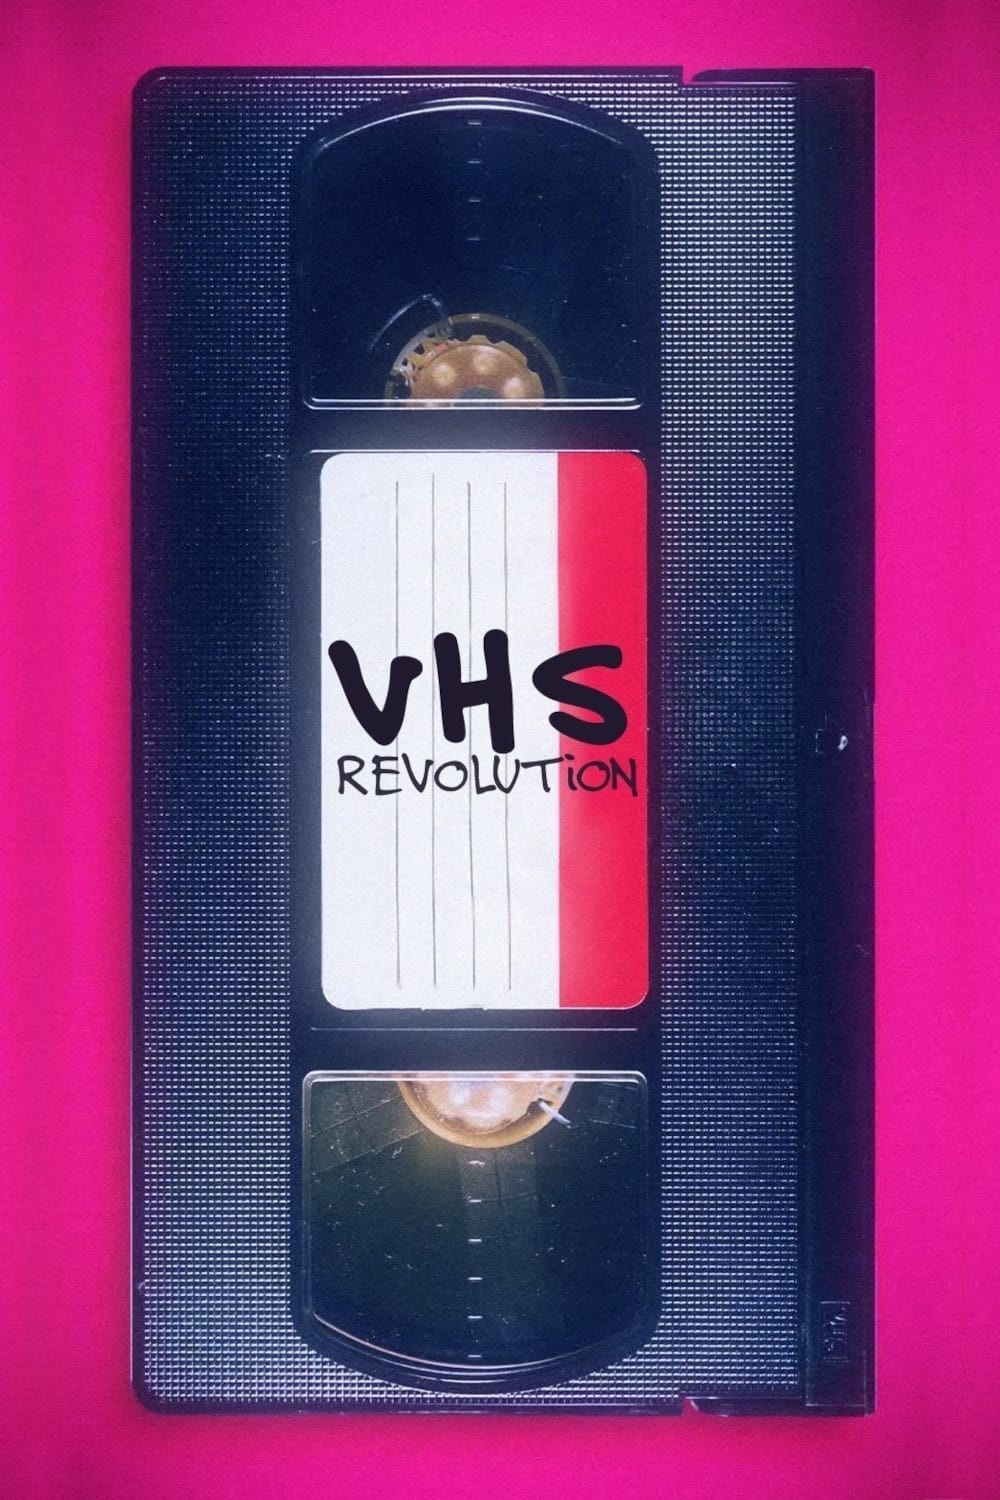 La revolución del VHS